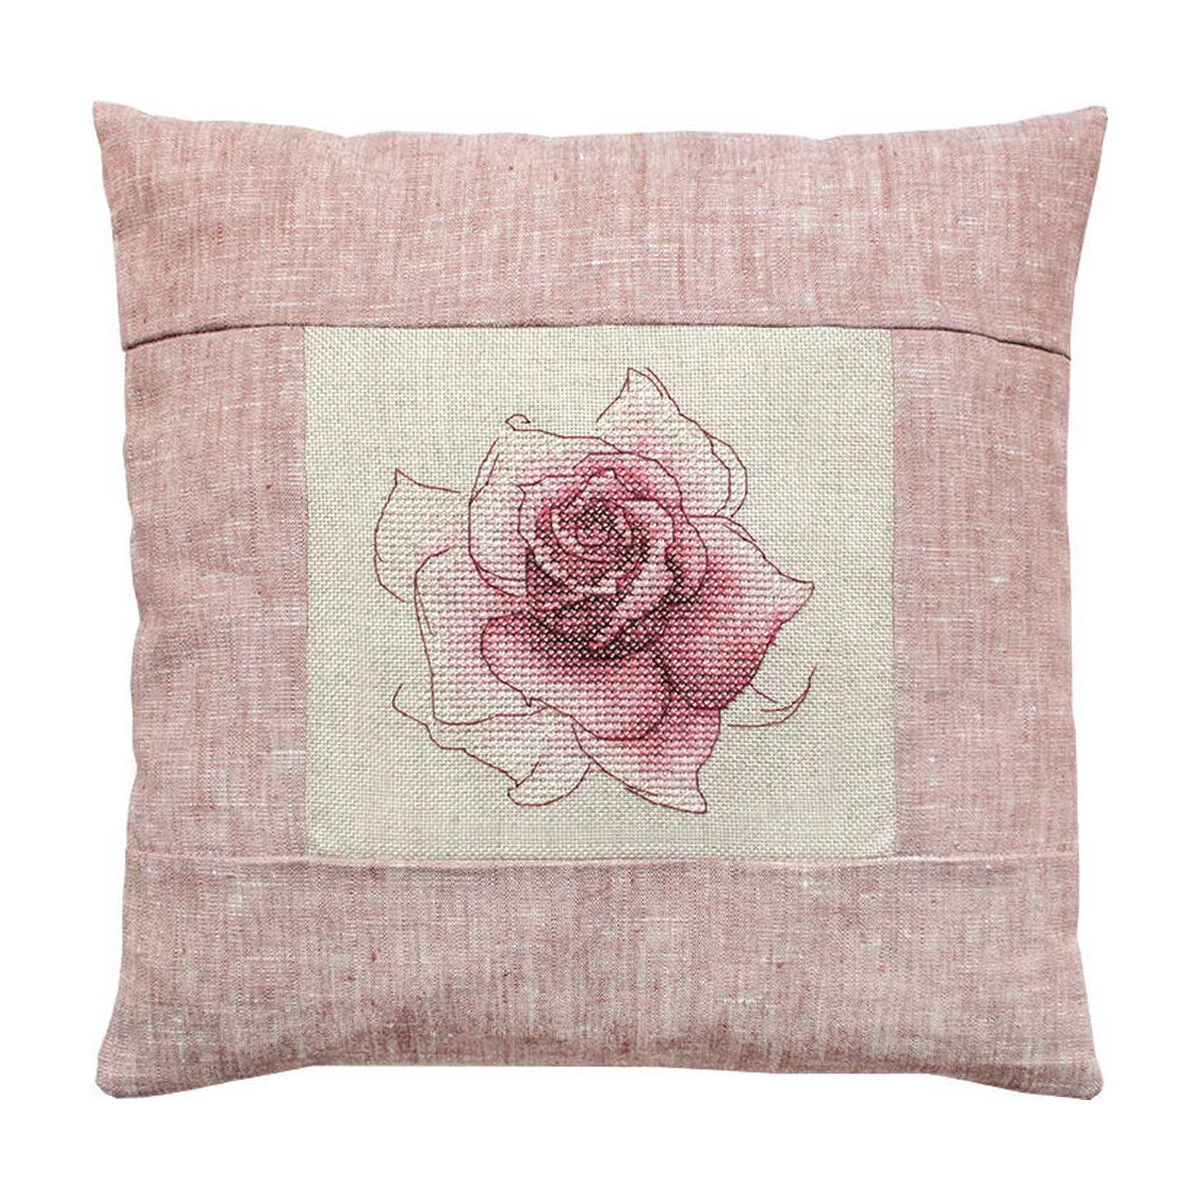 Квадратная подушка из фактурной розовой ткани. В центре -...